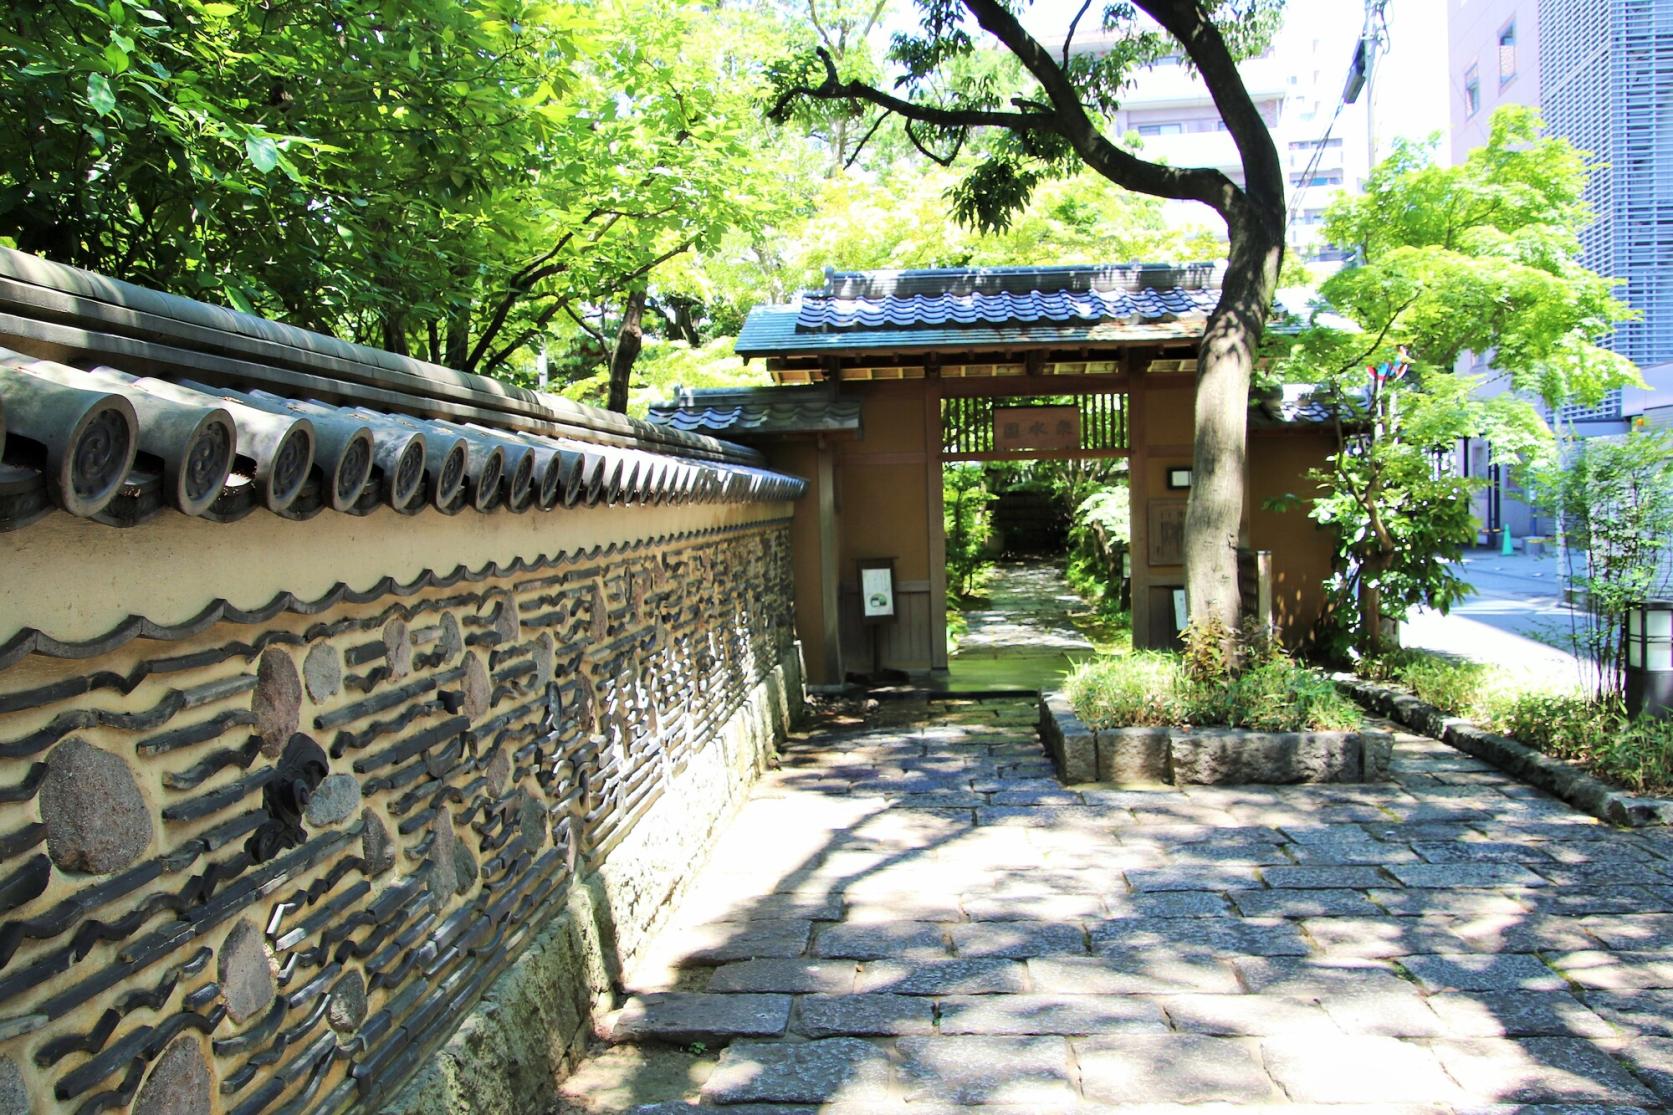 Rakusuien (Japanese Garden and Tea Pavillion)